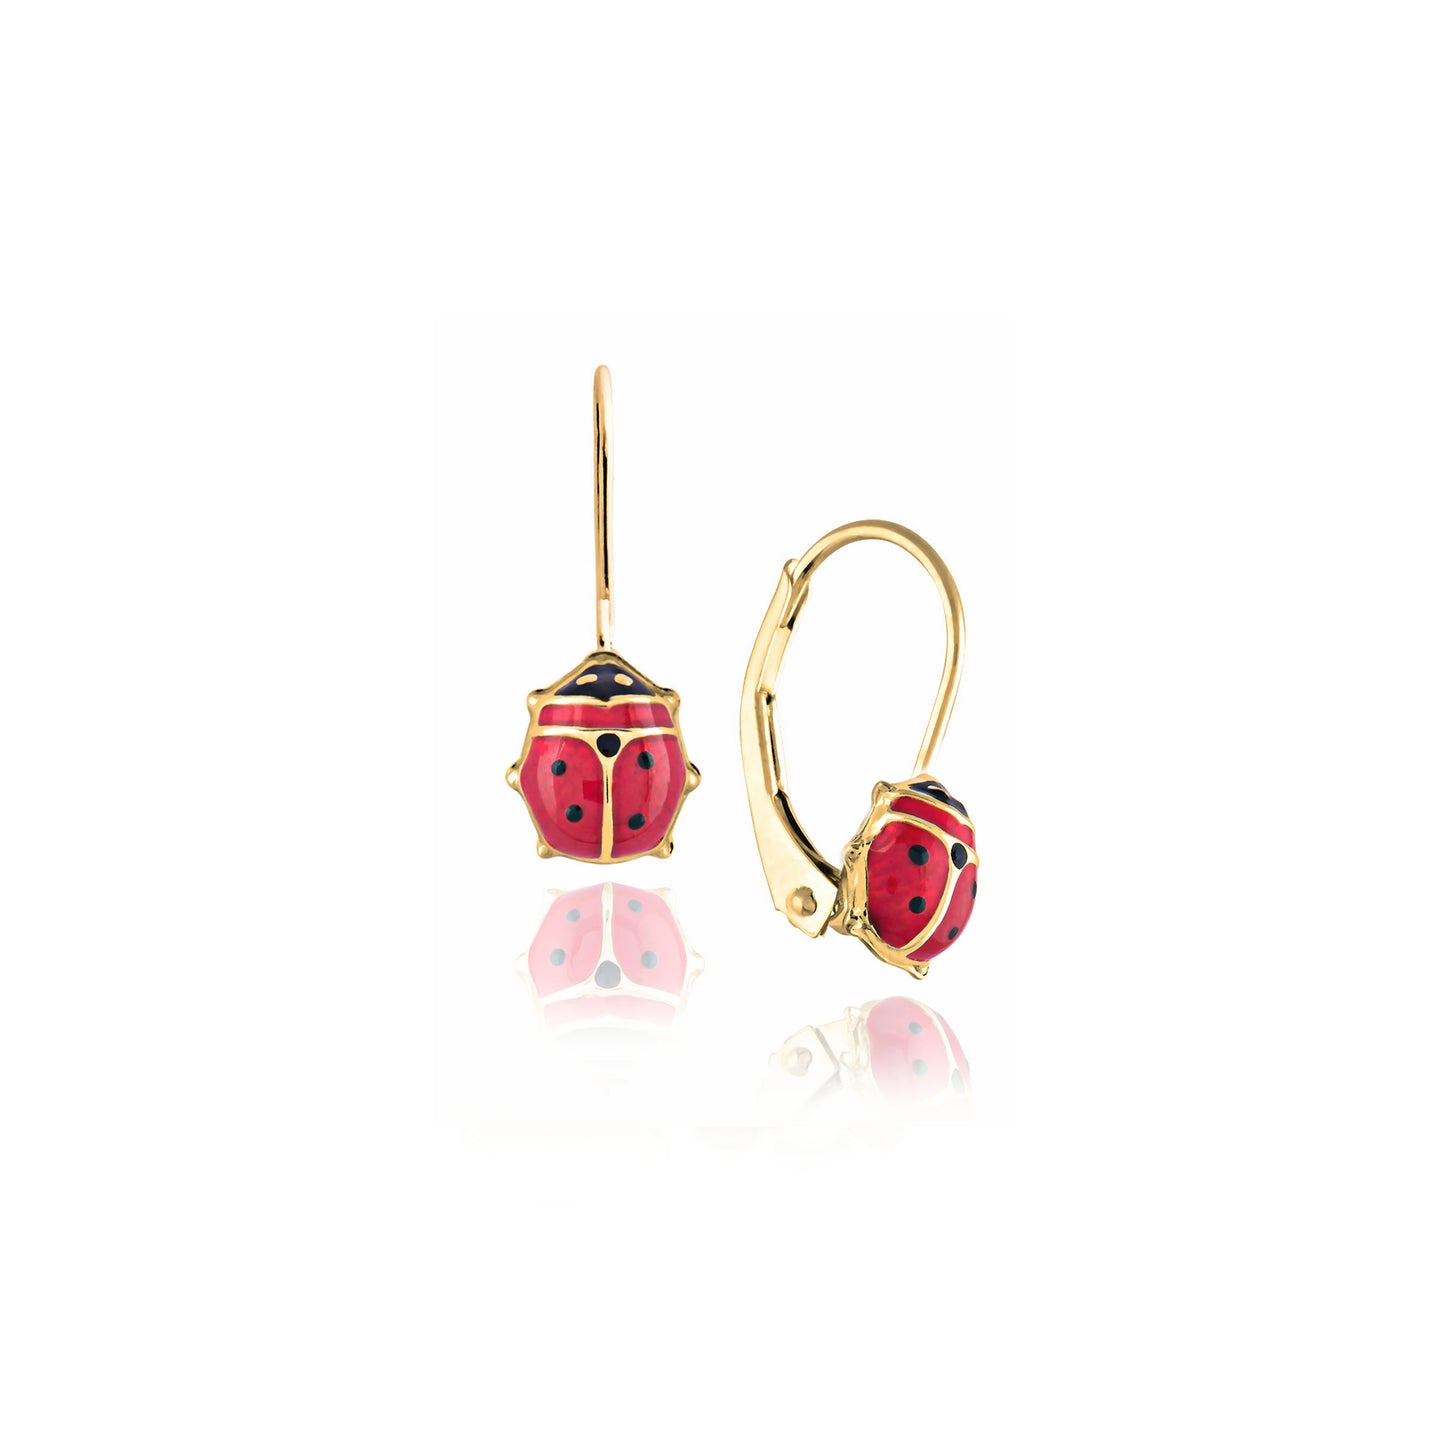 Ladybug Girl Earrings in Real Gold 